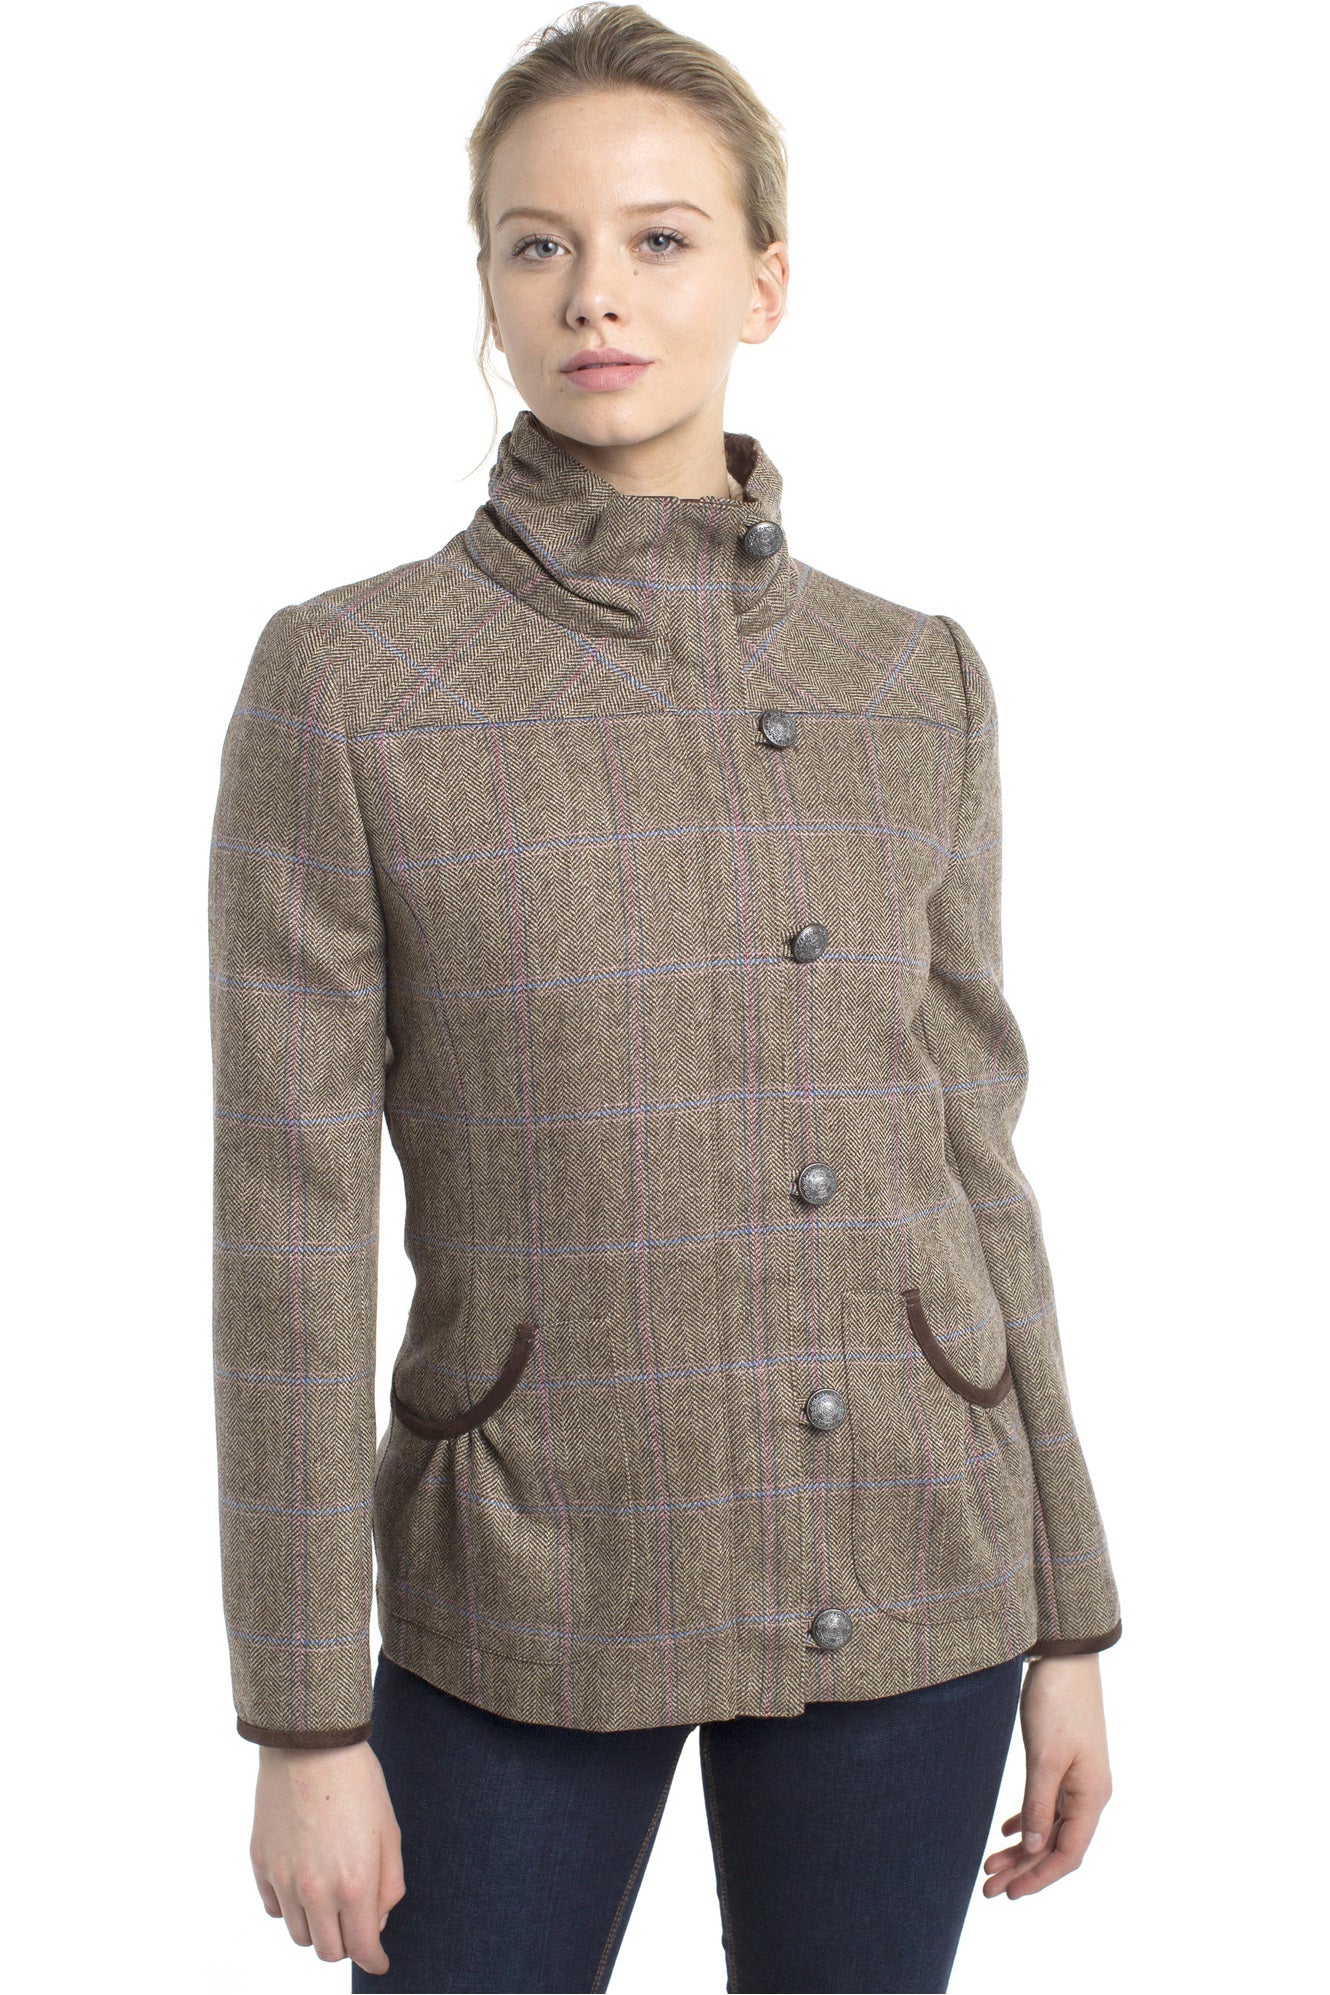 DUBARRY Bracken Ladies Tweed Jacket - Woodrose